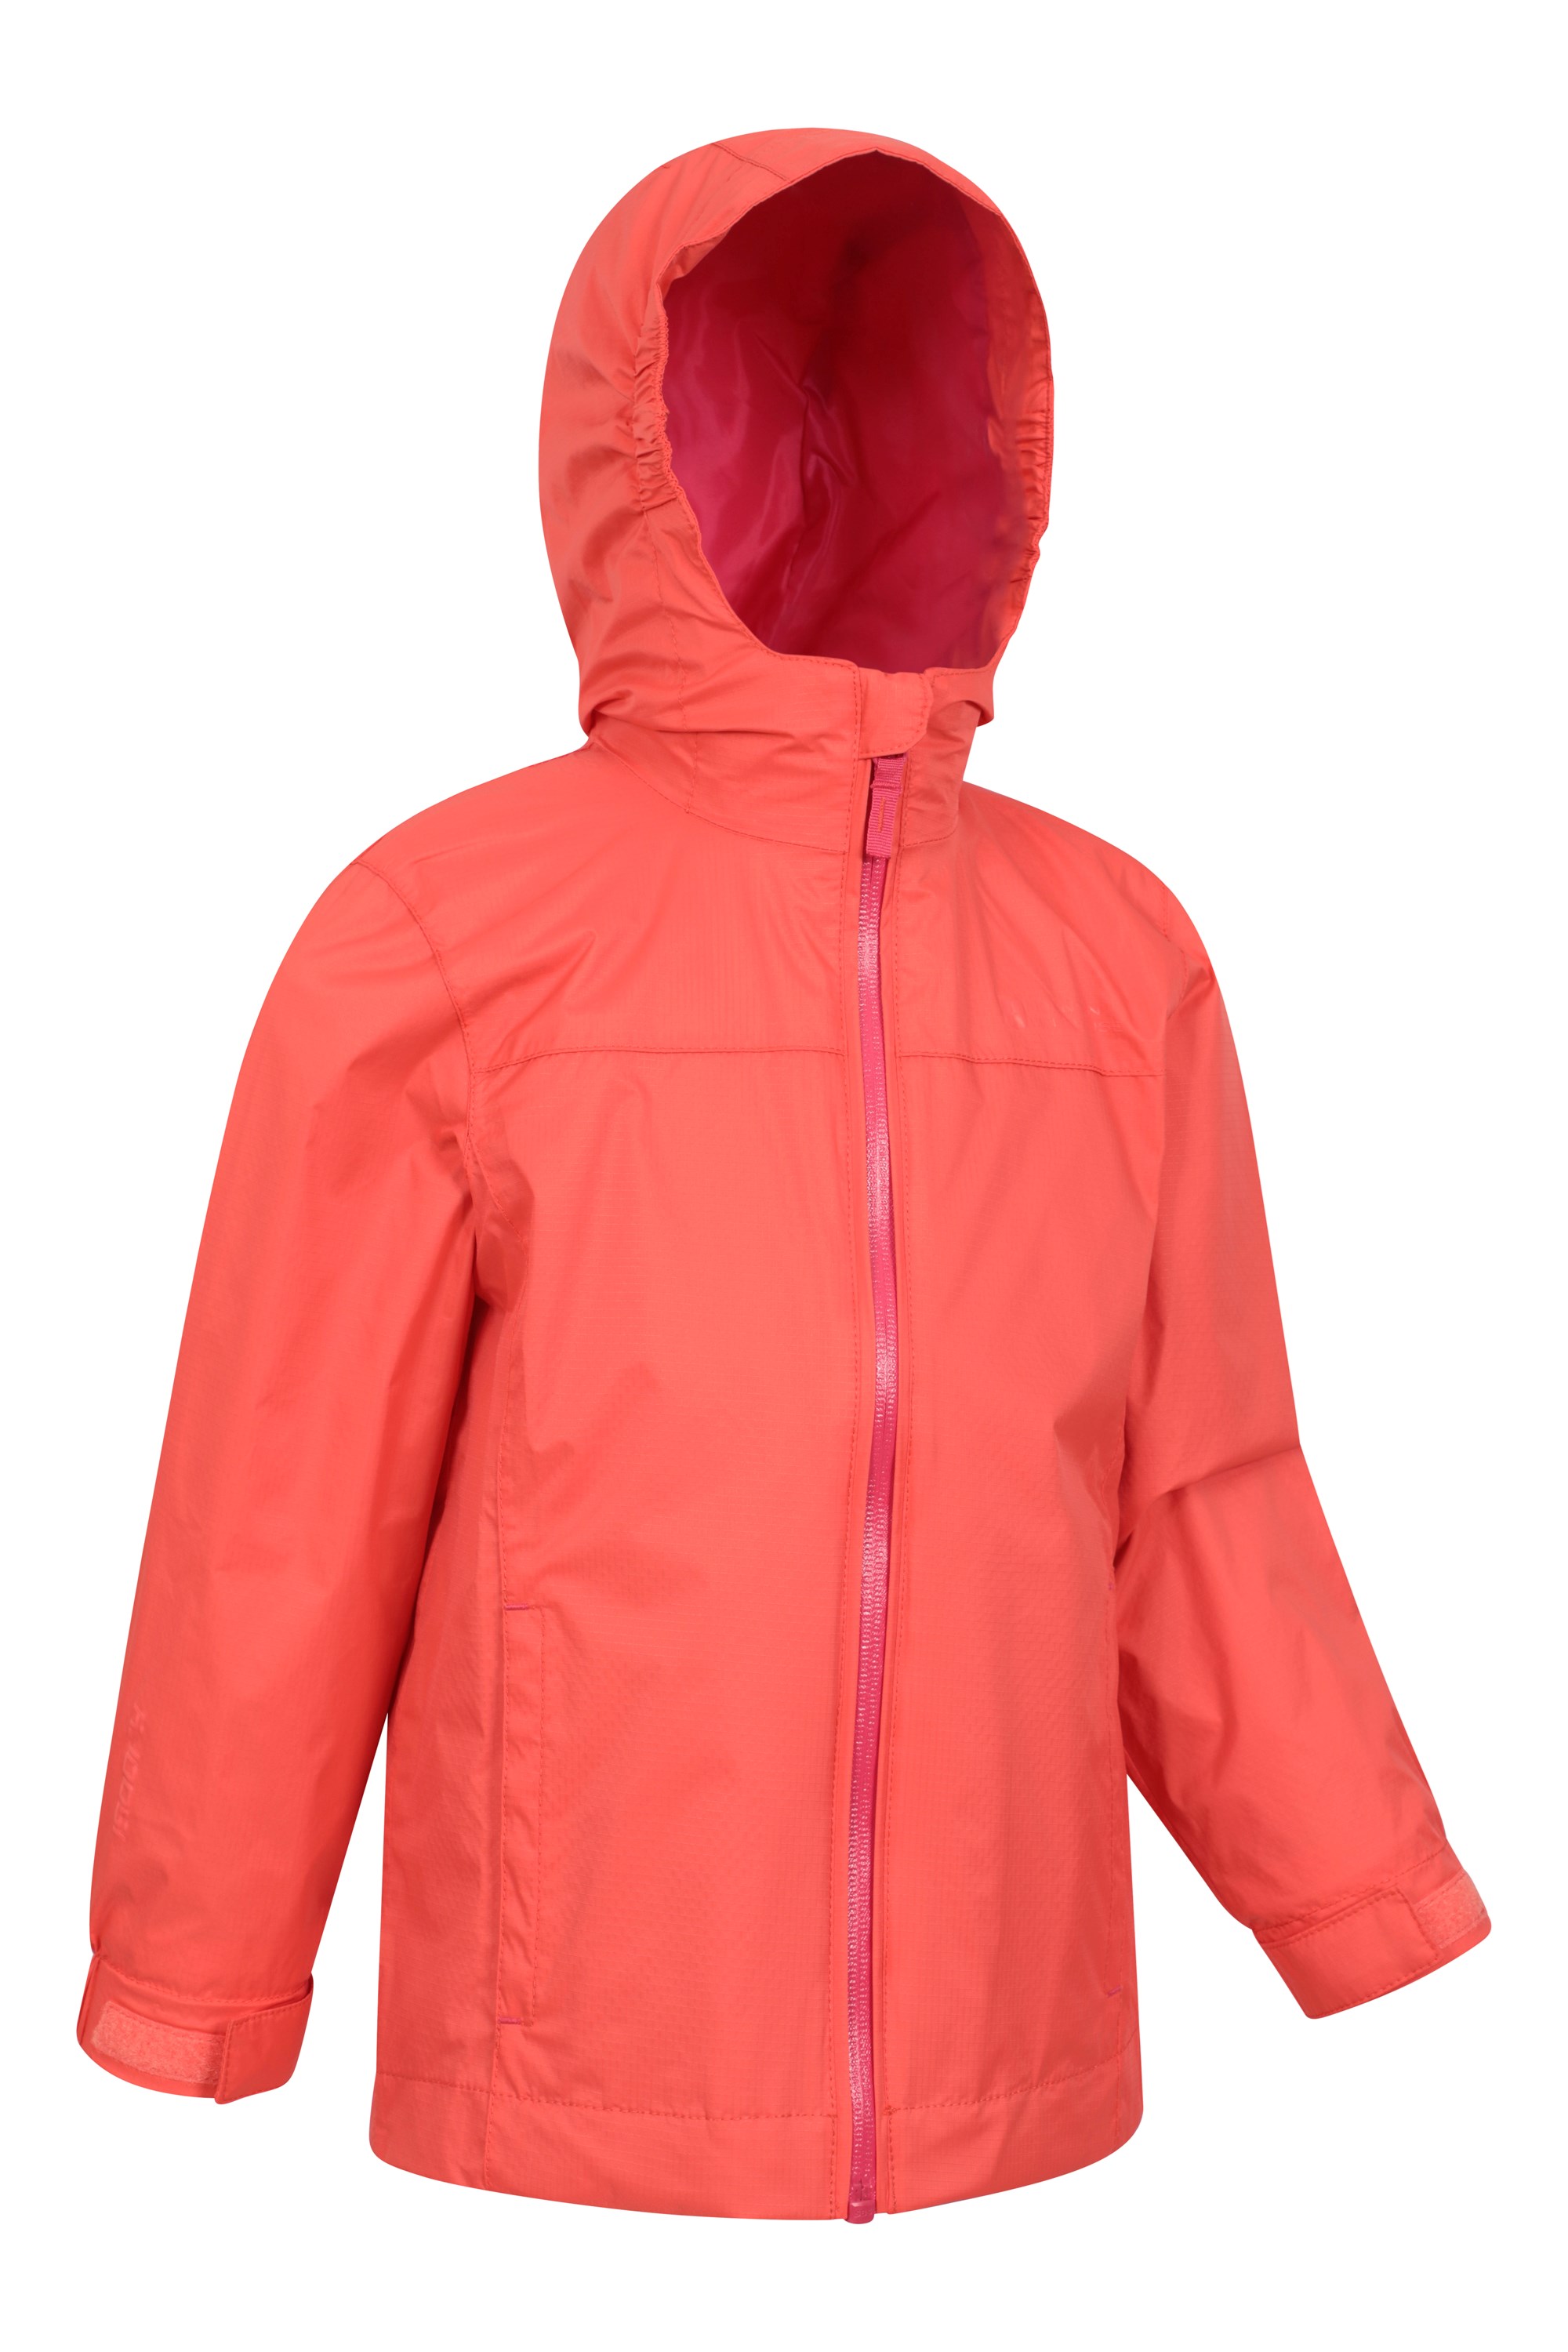 Torrent Kids Waterproof Jacket